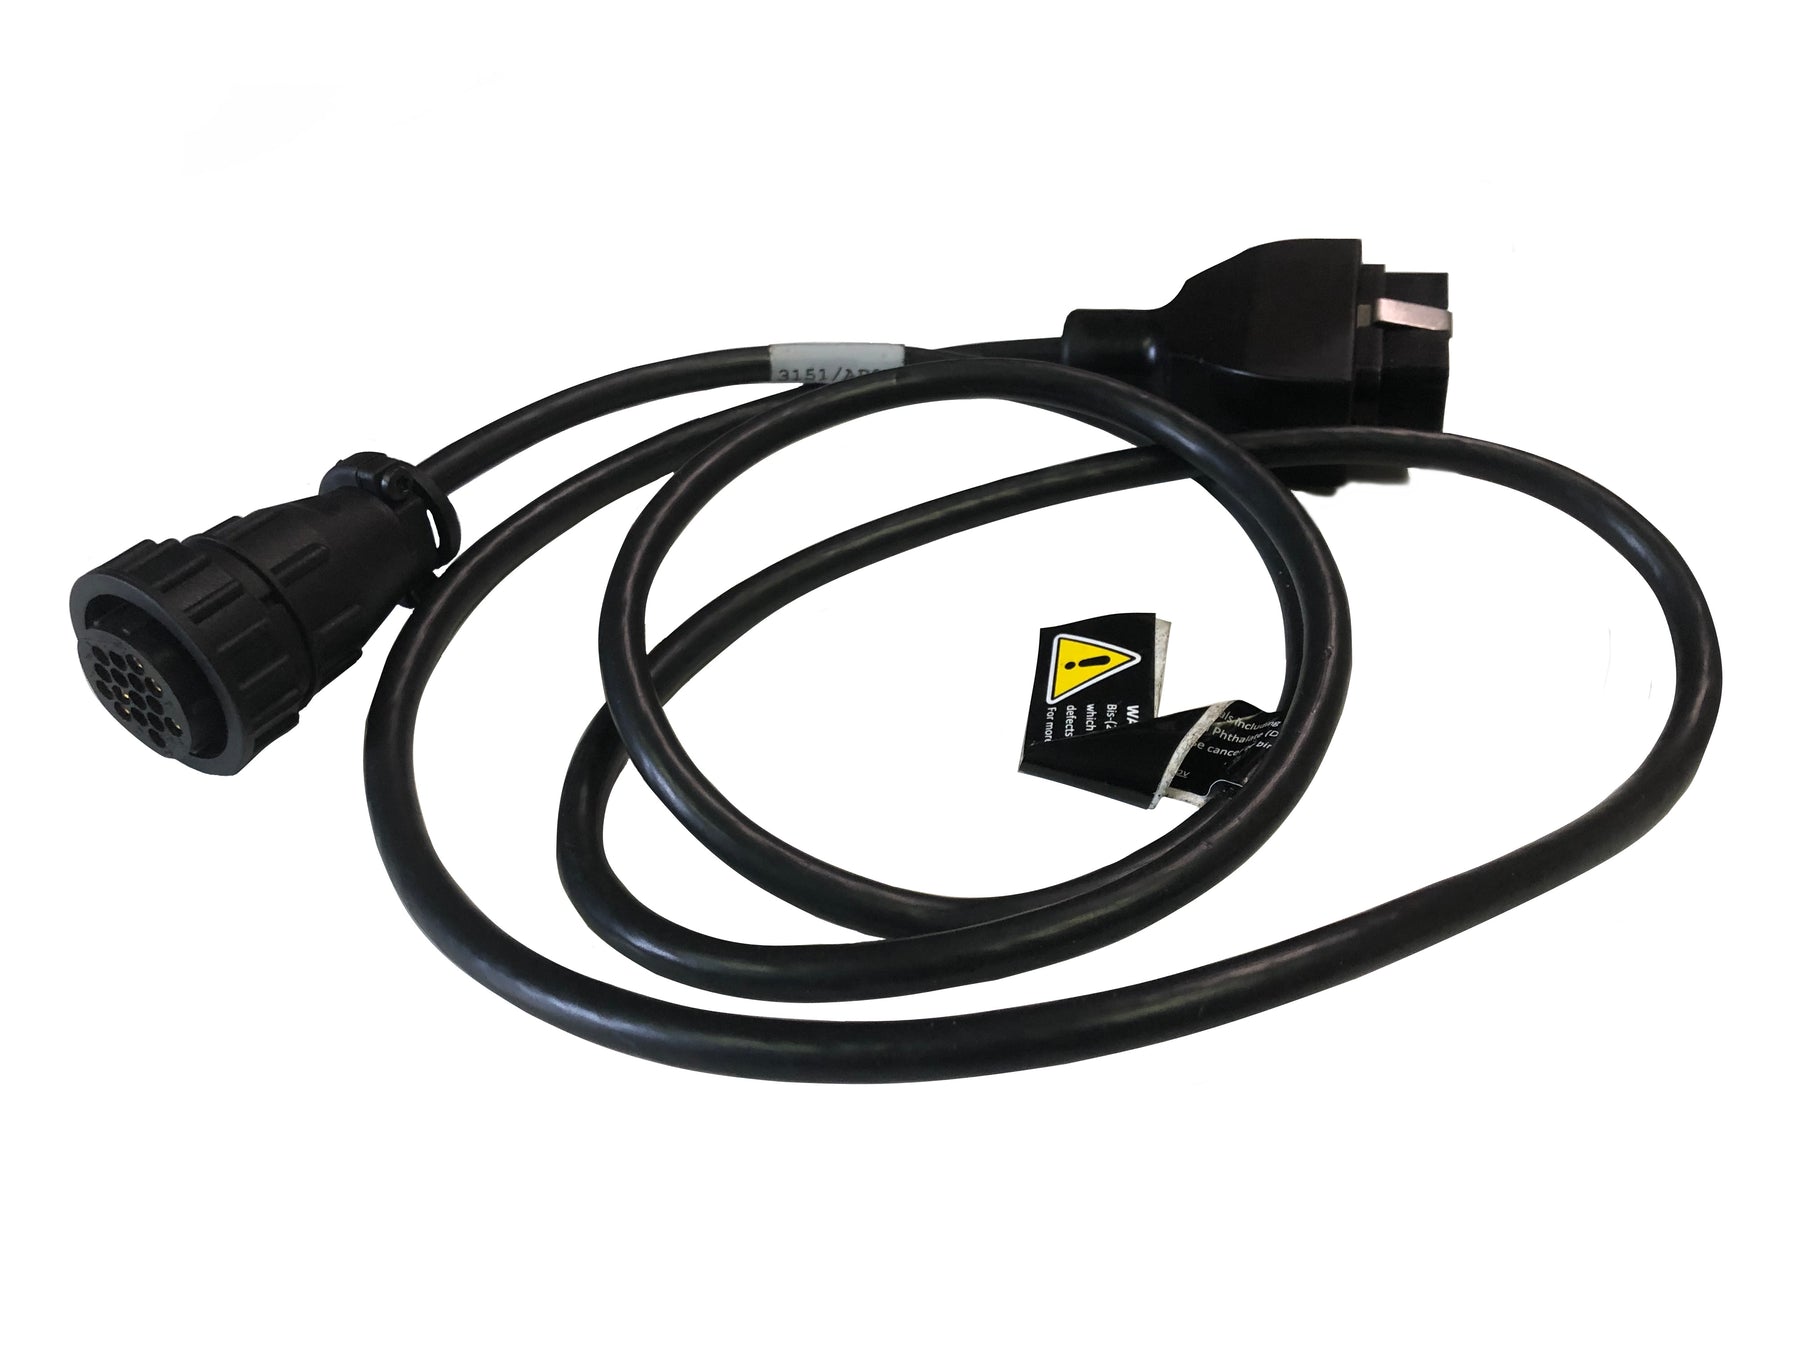 TEXA Bike Euro 5 OBD Cable